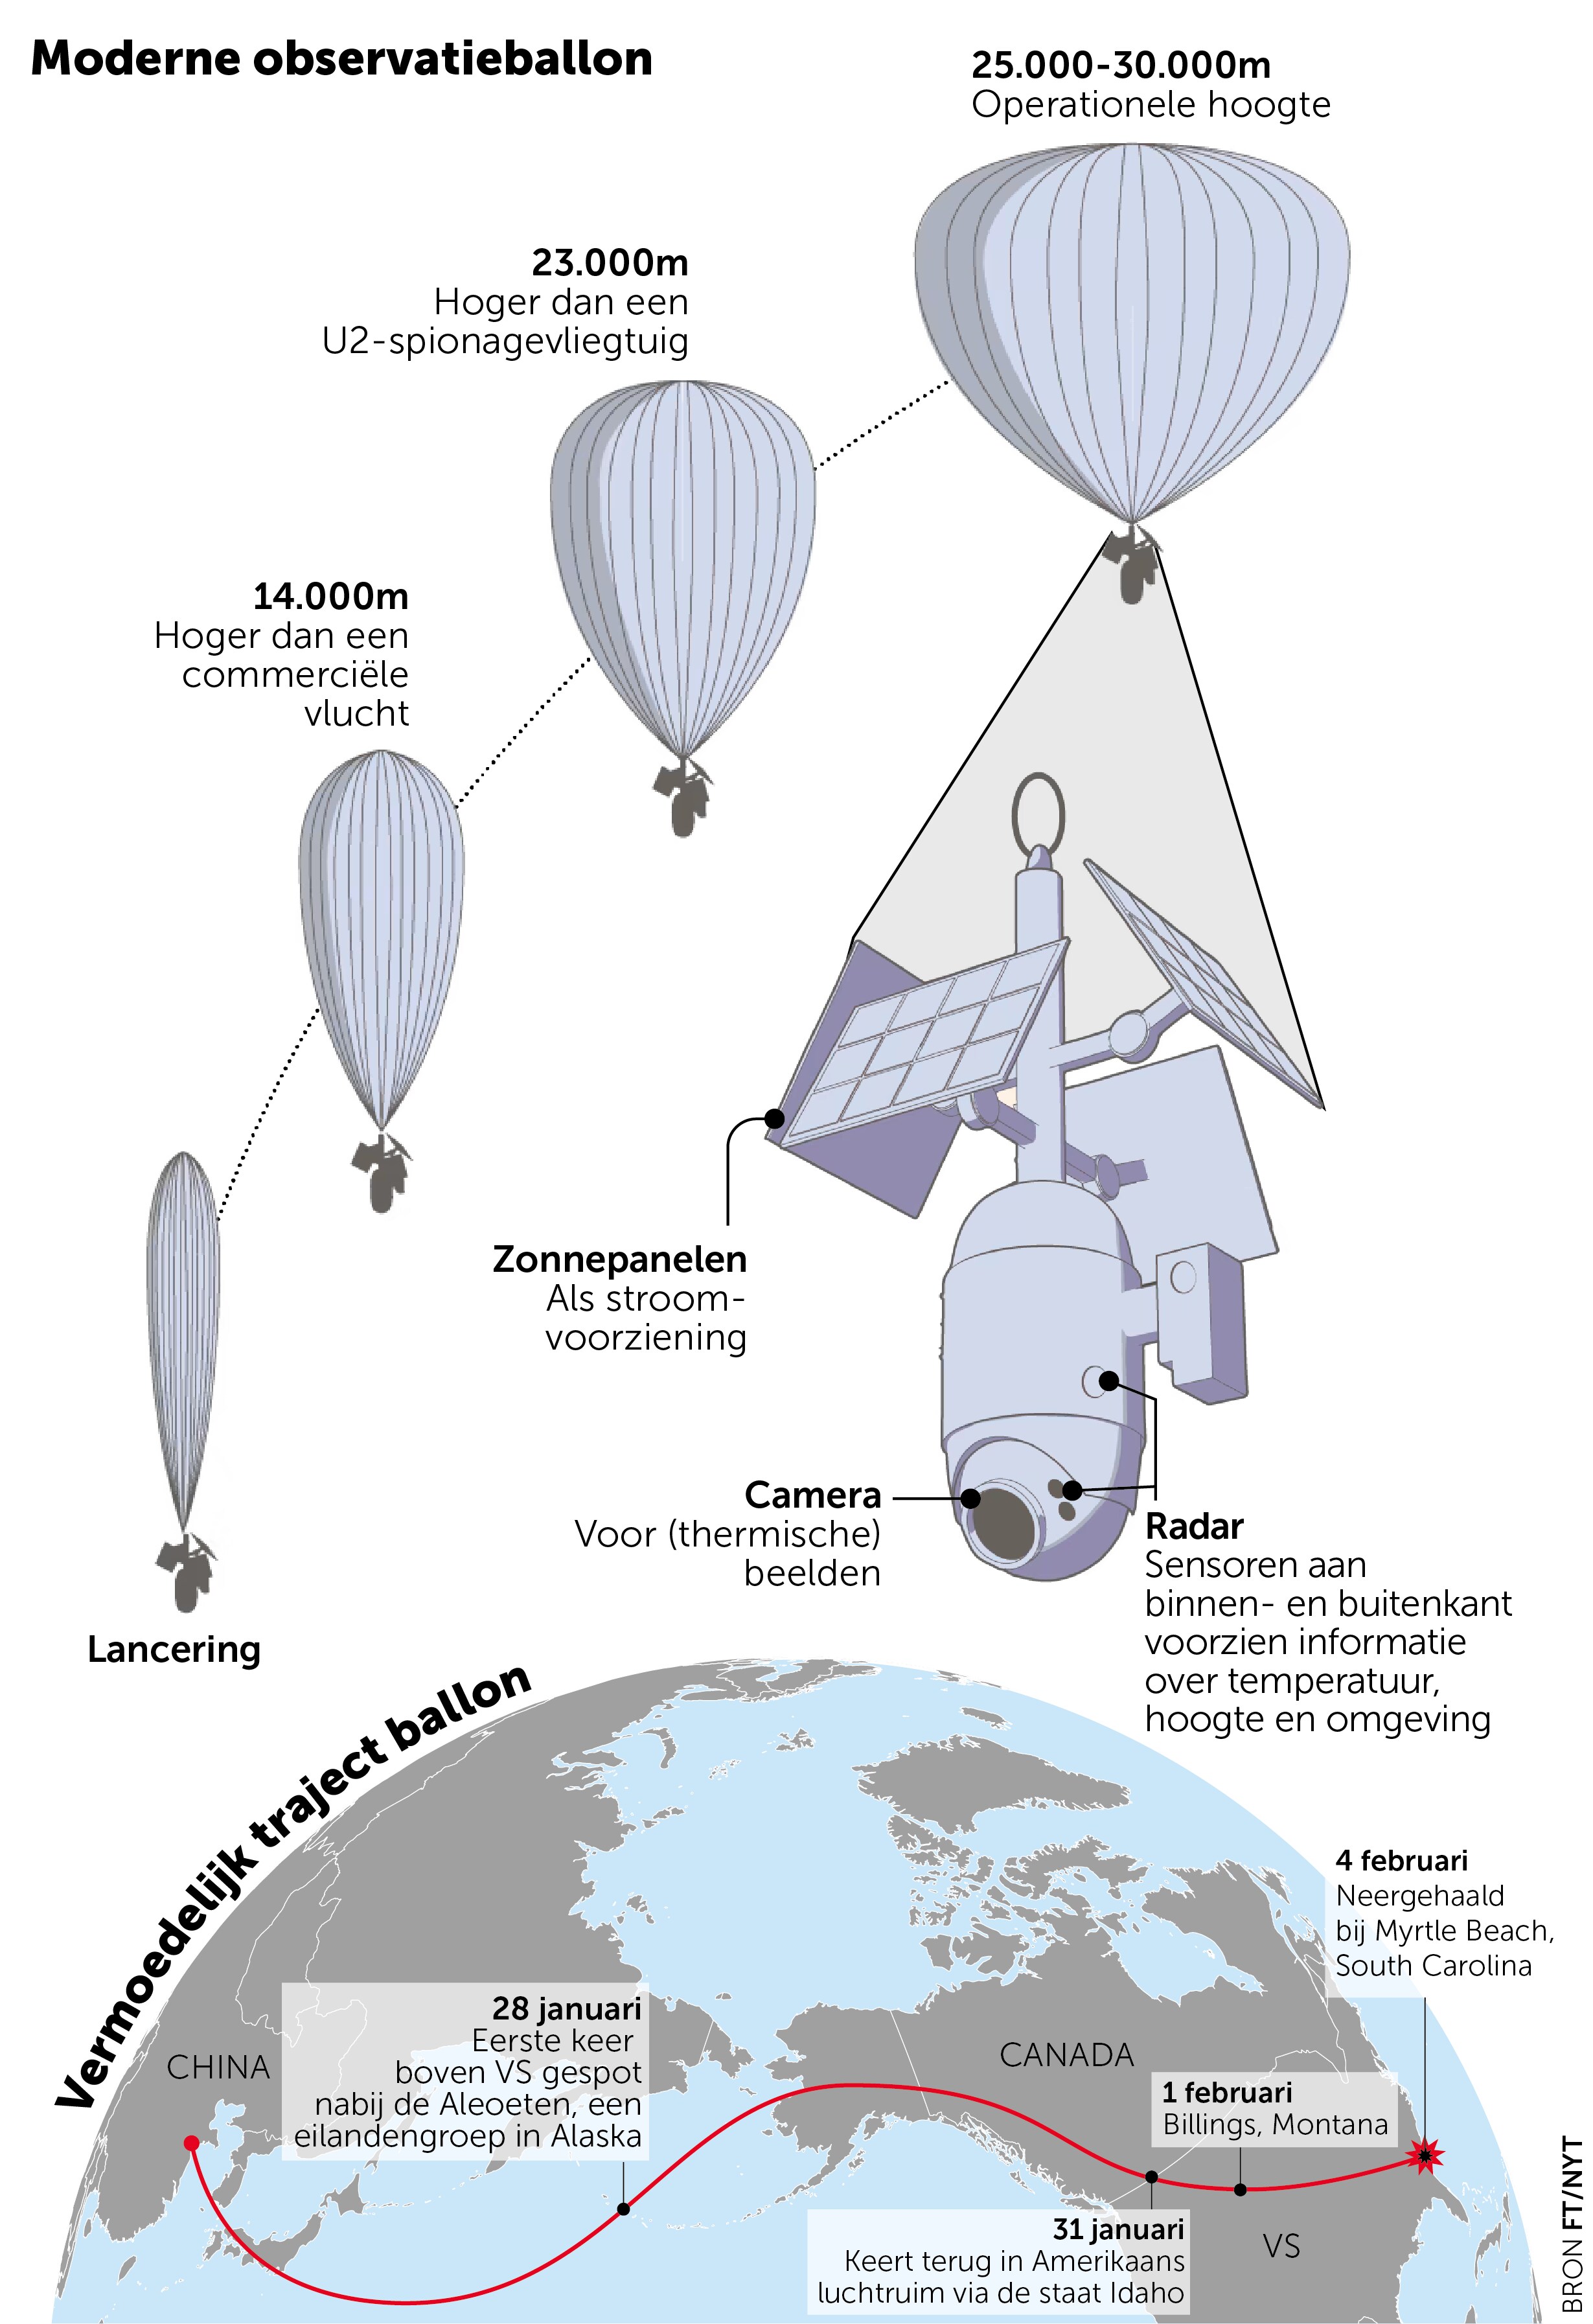 Chinese ‘spionageballon’ boven Amerika: heeft Peking een steek laten vallen?